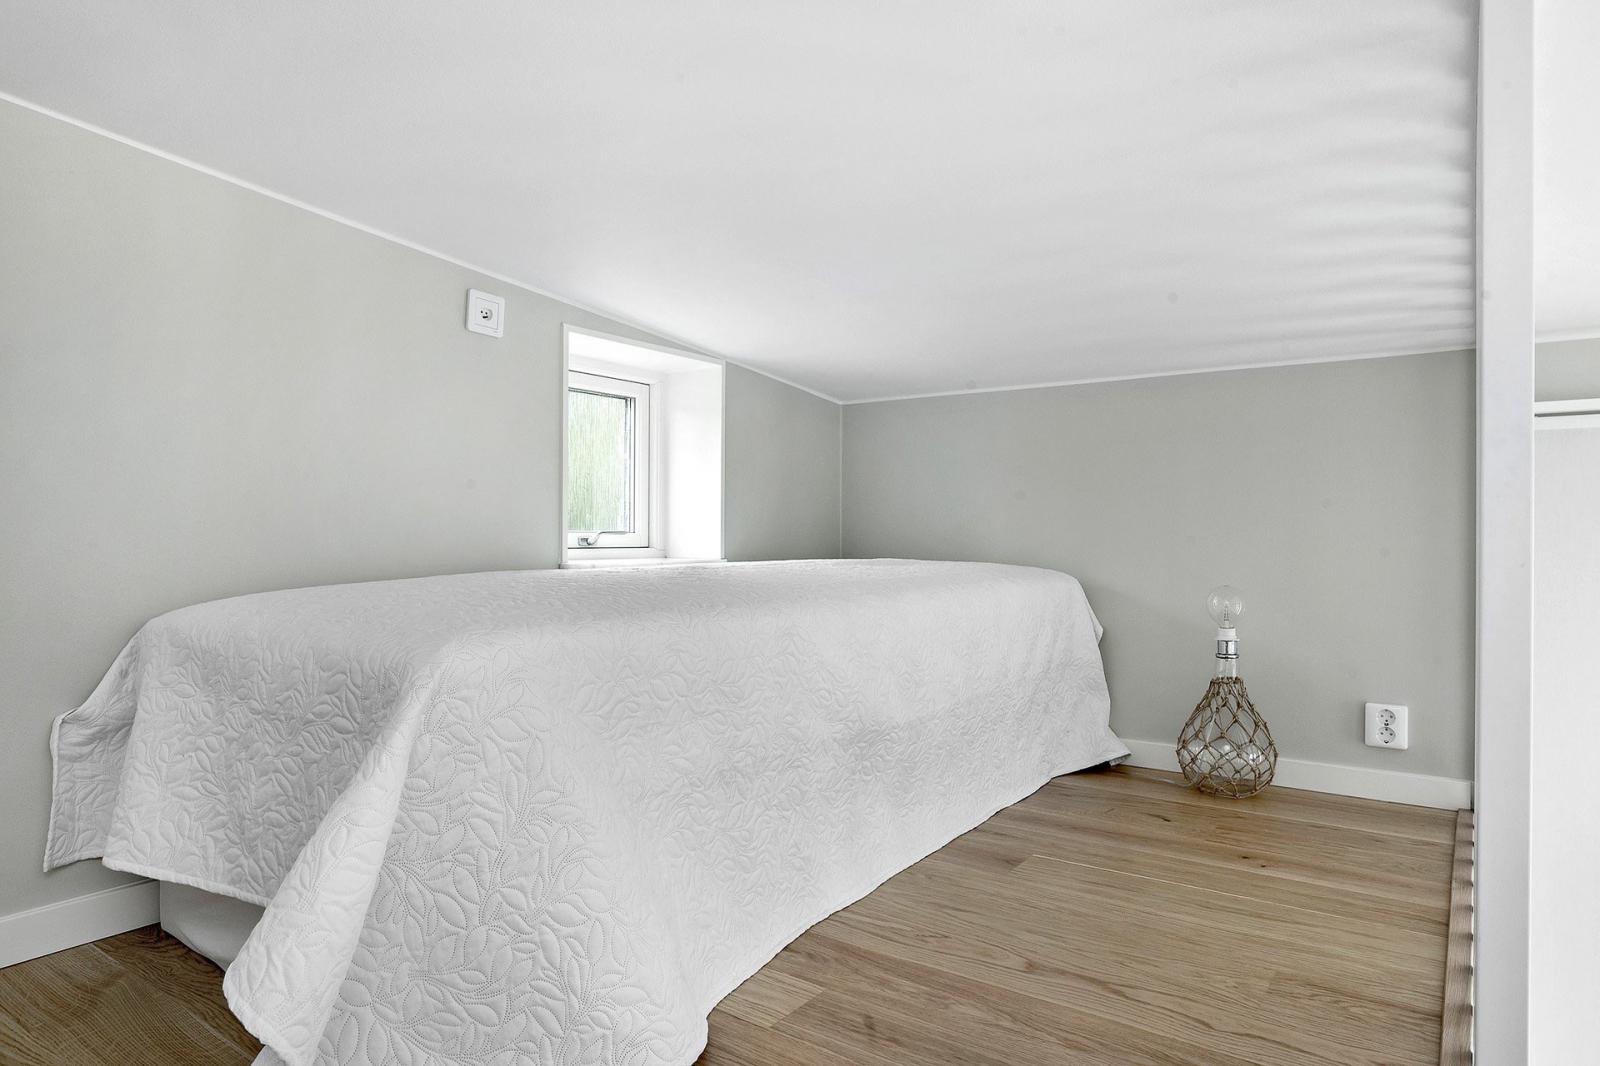 Hình ảnh toàn cảnh phòng ngủ trên gác lửng với sàn lát gỗ, cửa sổ kính, trang trí tối giản